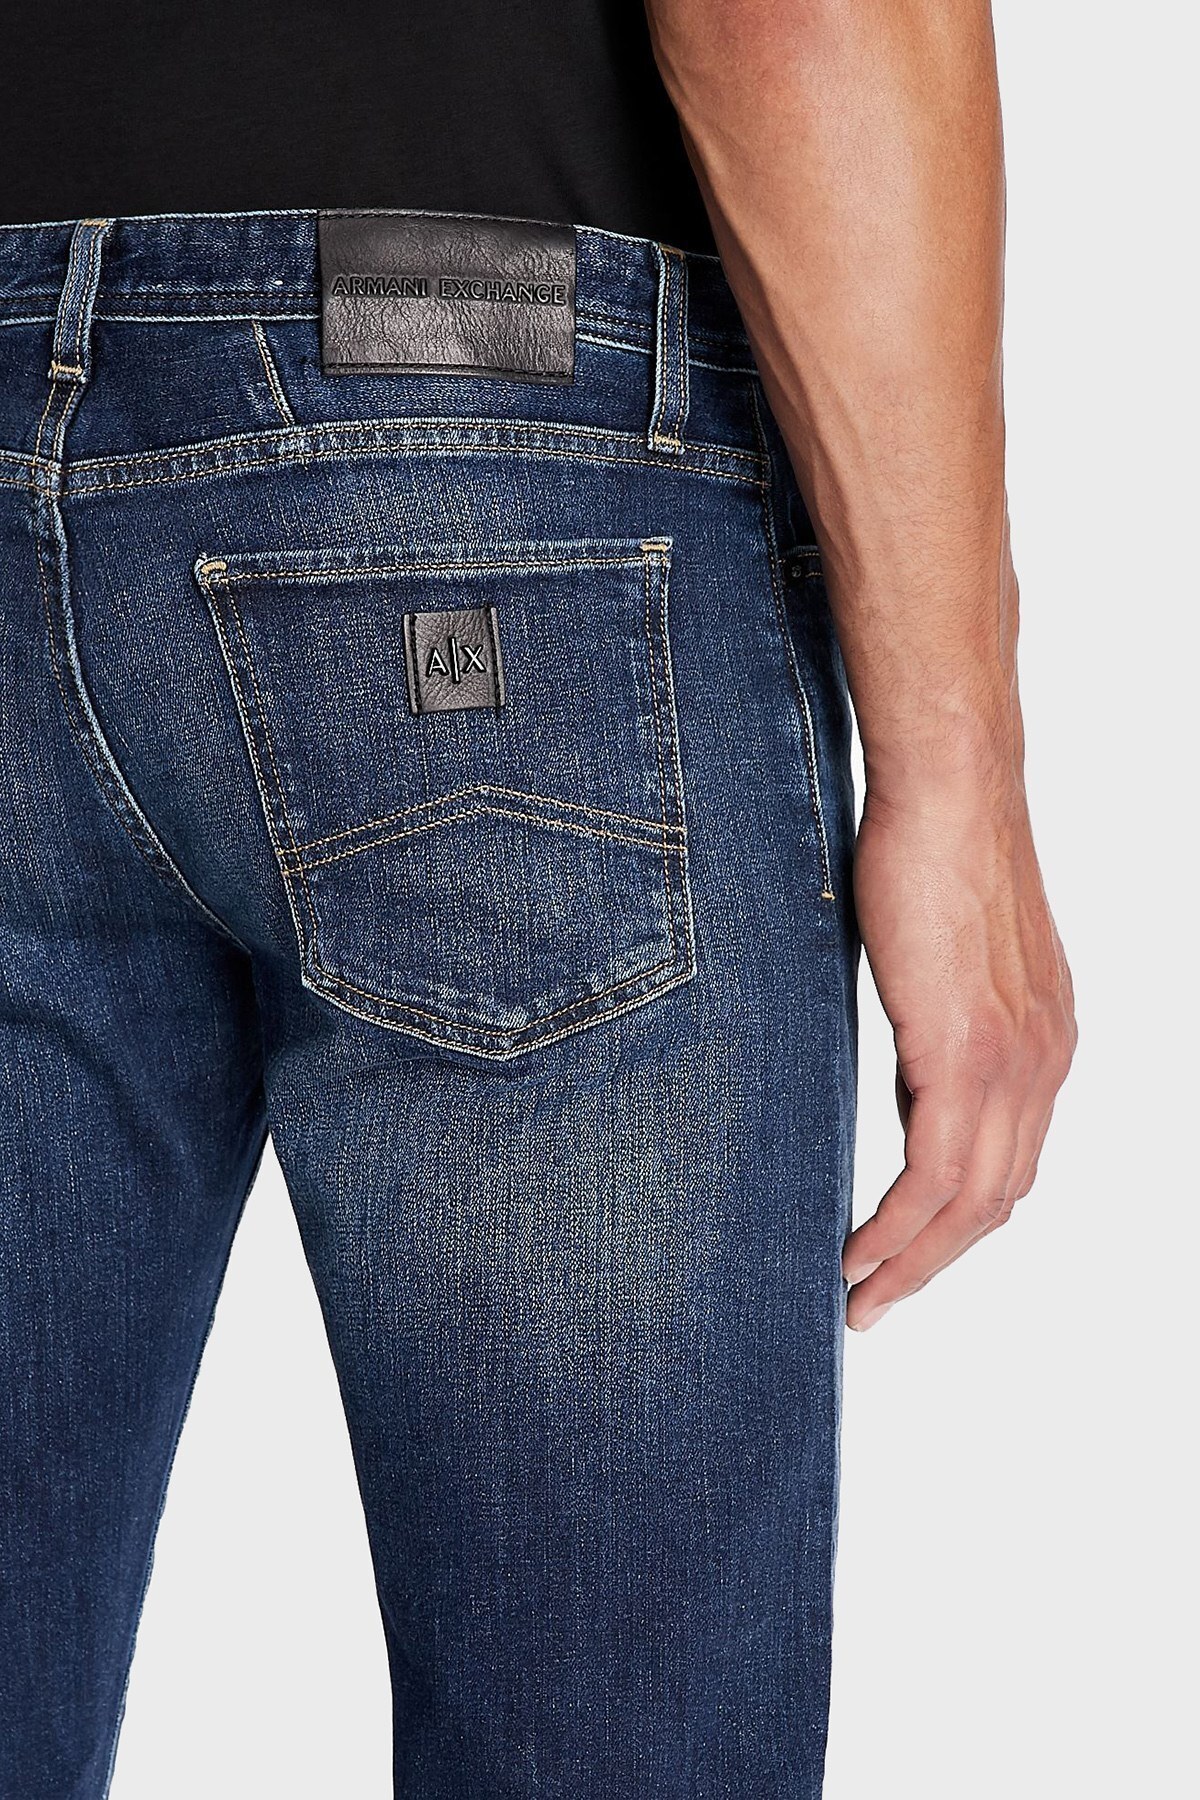 Armani Exchange Pamuklu Skinny Fit J14 Jeans Erkek Kot Pantolon 6KZJ14 Z1P3Z 1500 LACİVERT